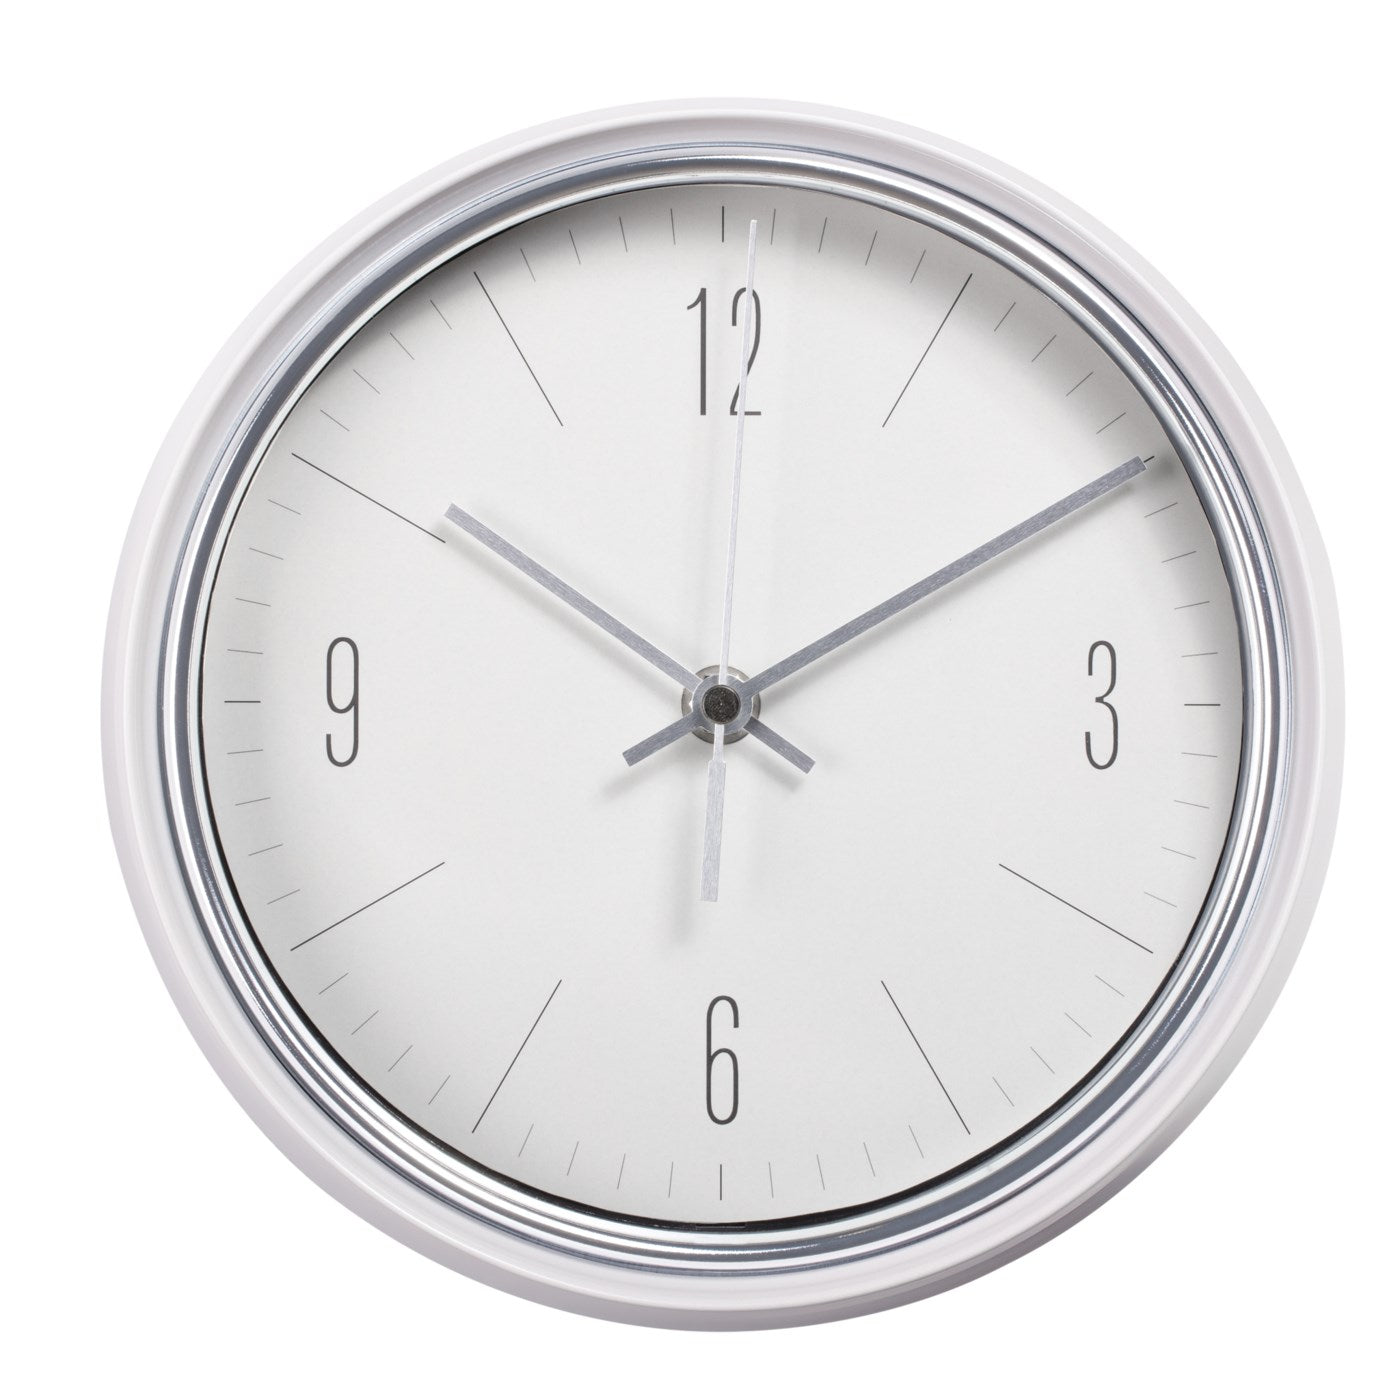 Oliver Retro Wall Clock - White